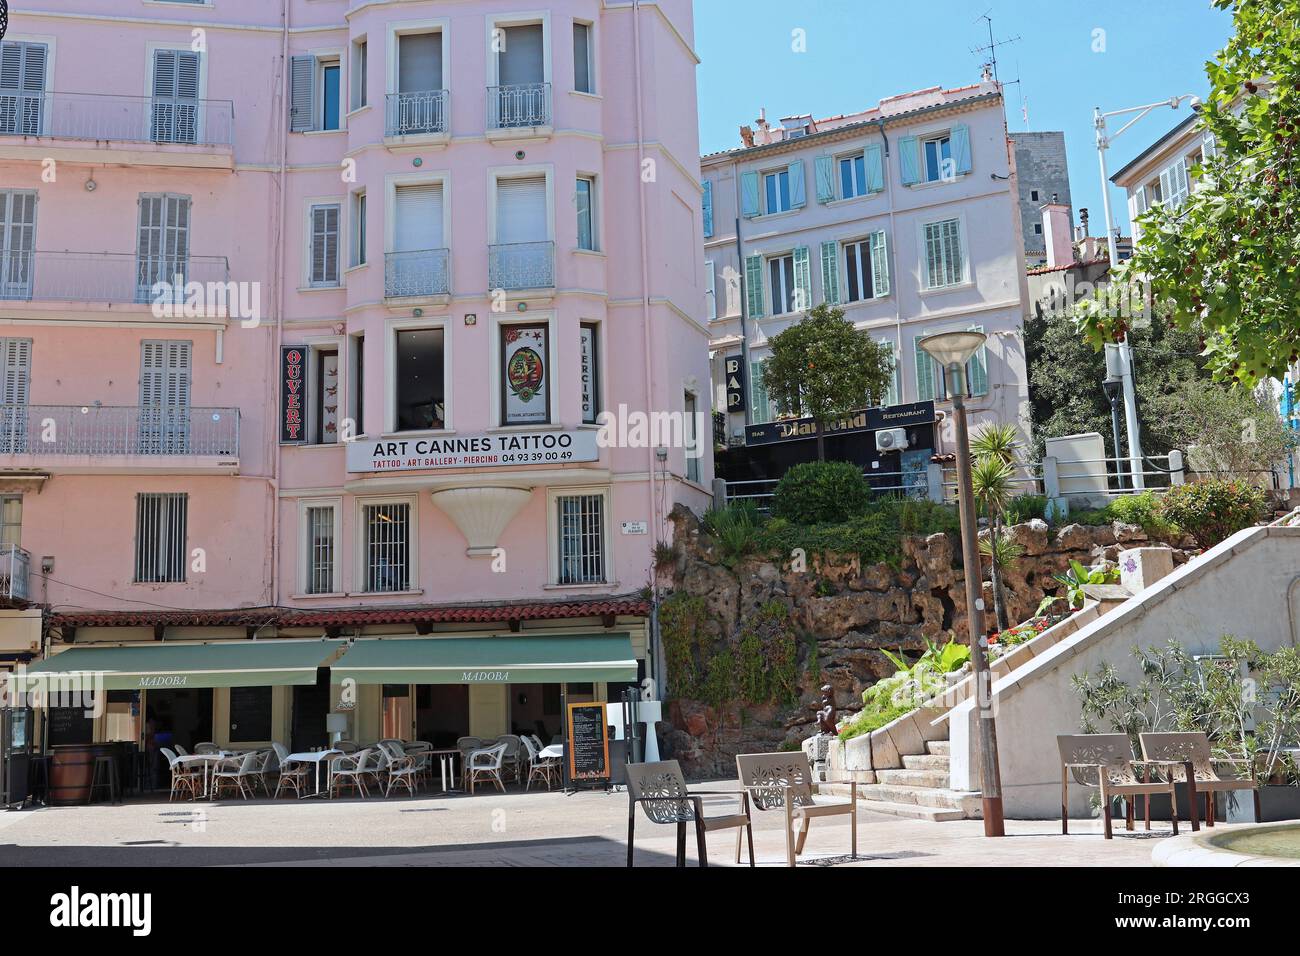 Coin pittoresque de Cannes près du port dans le quartier du Vieux Port. Les bâtiments traditionnels à volets abritent des bars, des restaurants et des services modernes Banque D'Images